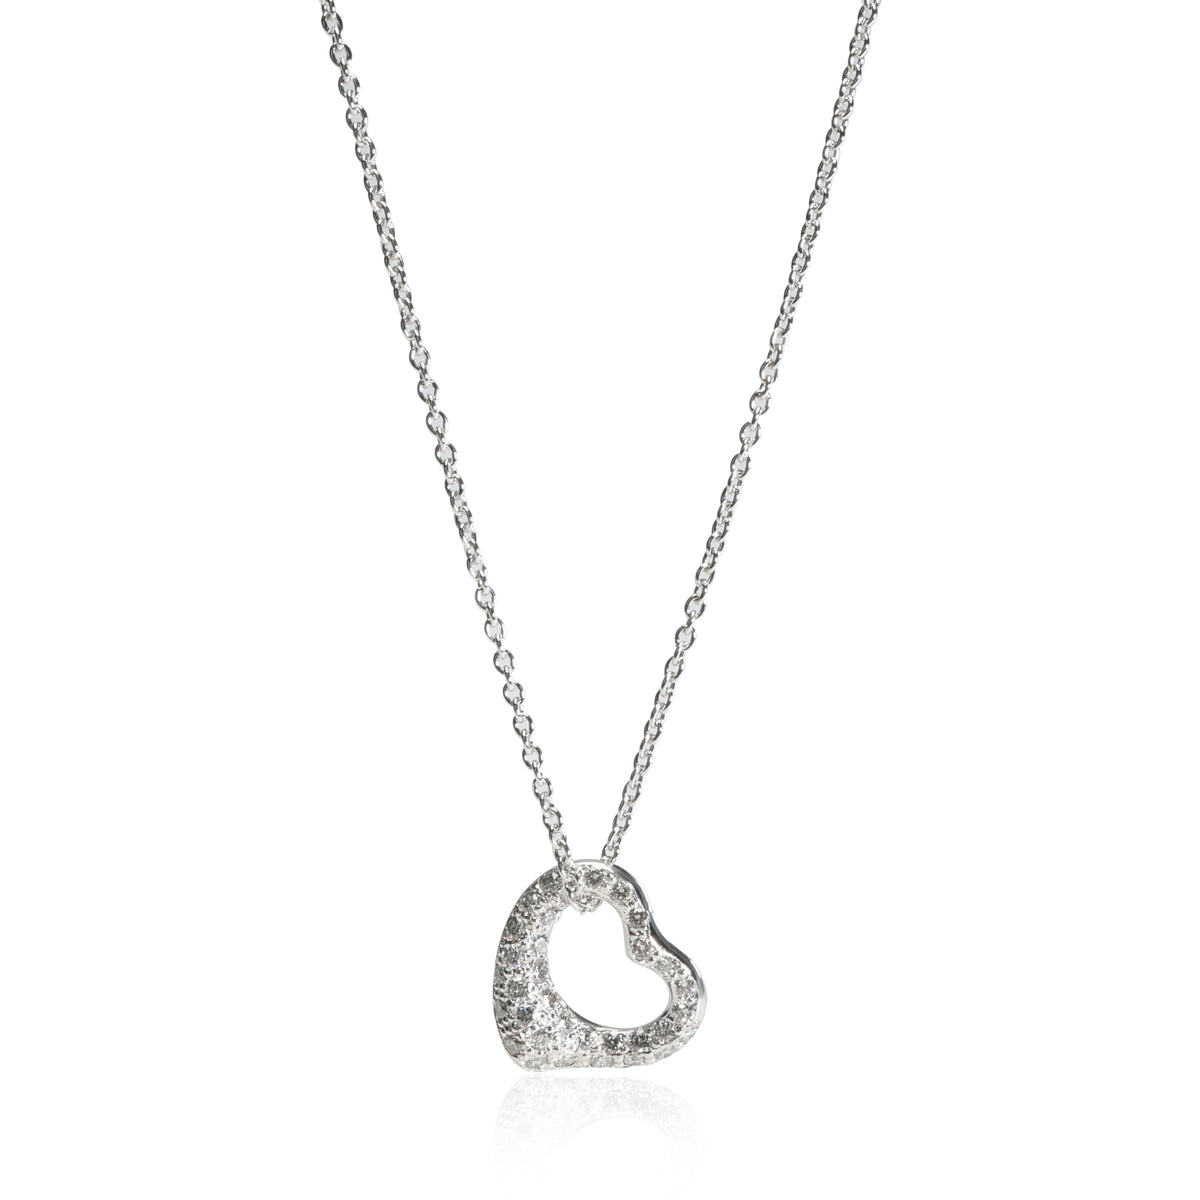 Tiffany & Co. Elsa Peretti Open Heart Diamond Necklace in  Platinum 0.35 CTW